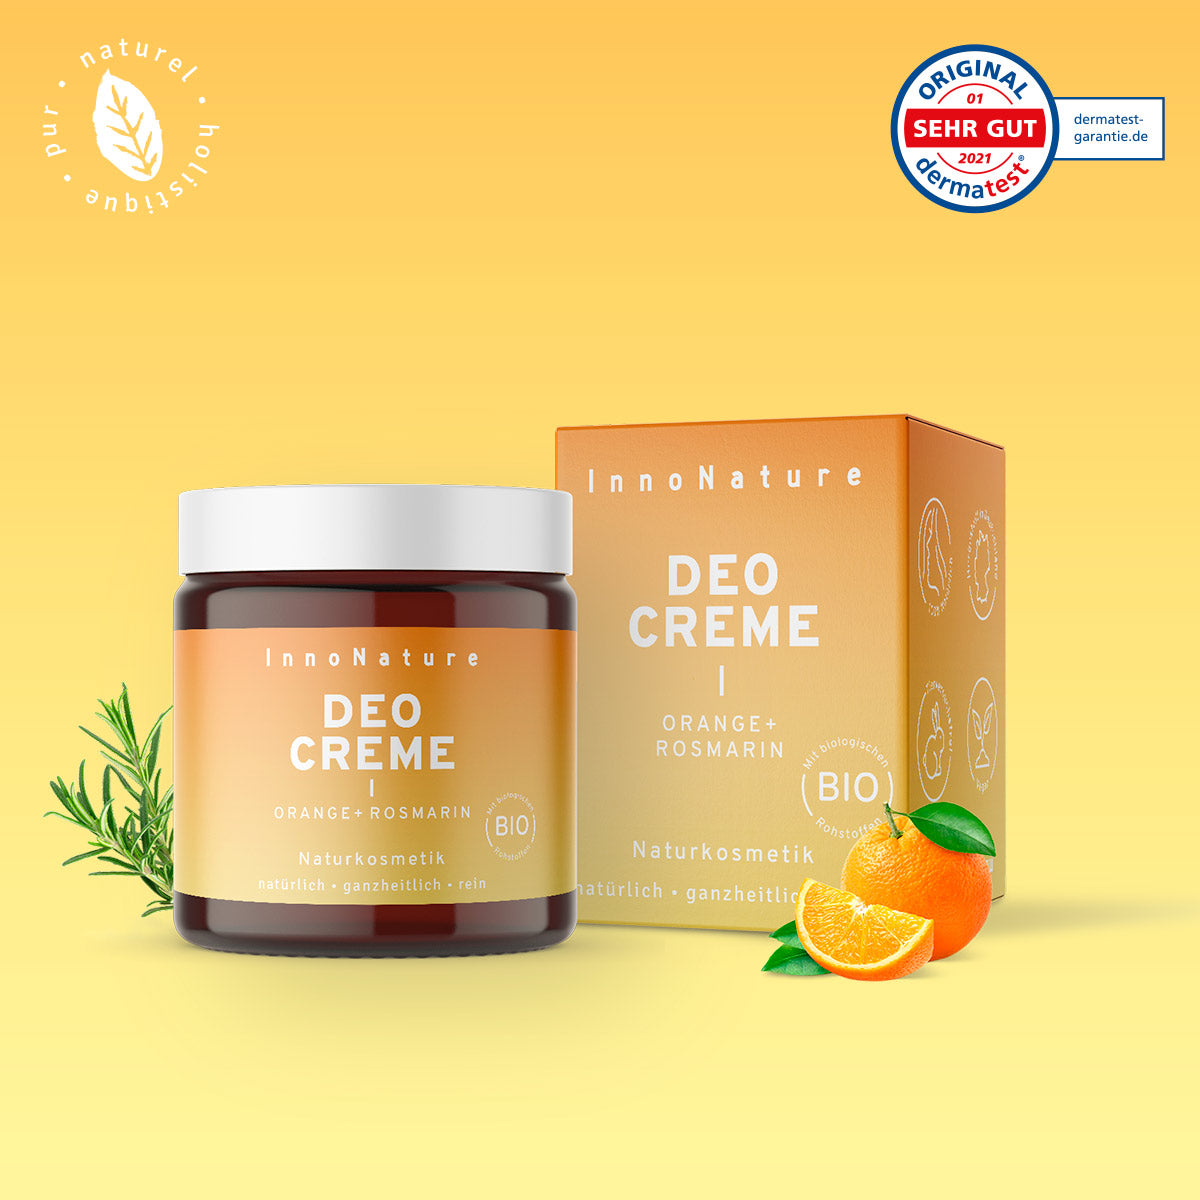 Déodorant Crème Naturel - Orange + Romarin